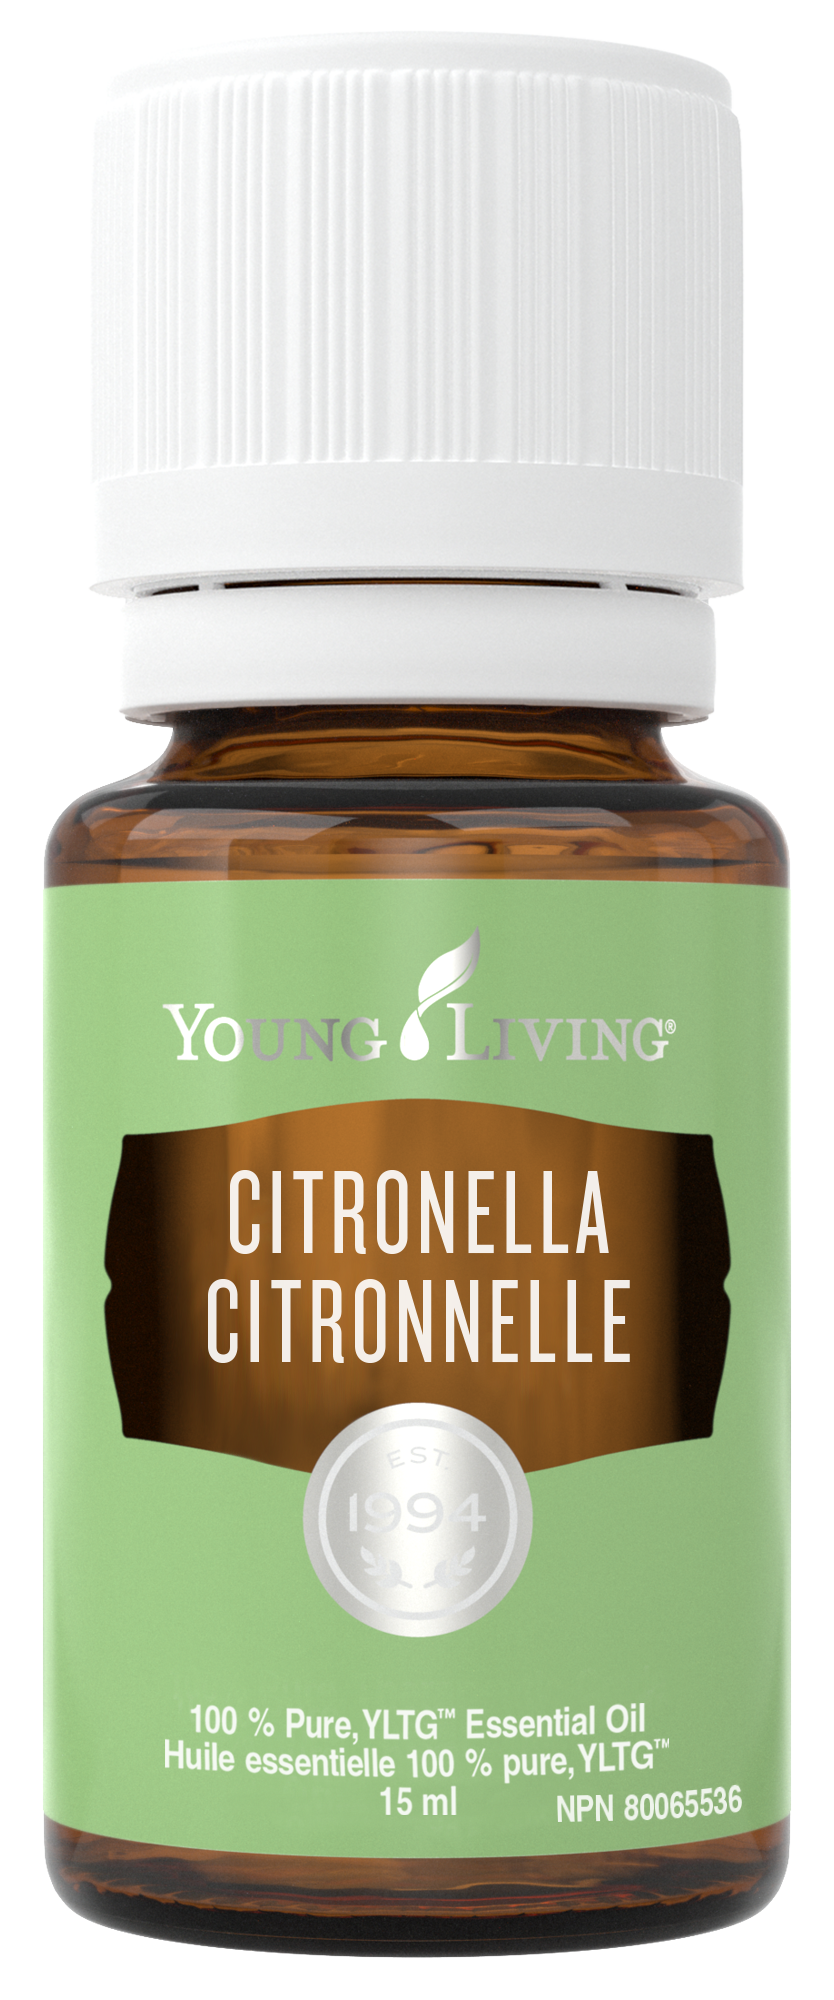 YL - Essential Oil - Citronella